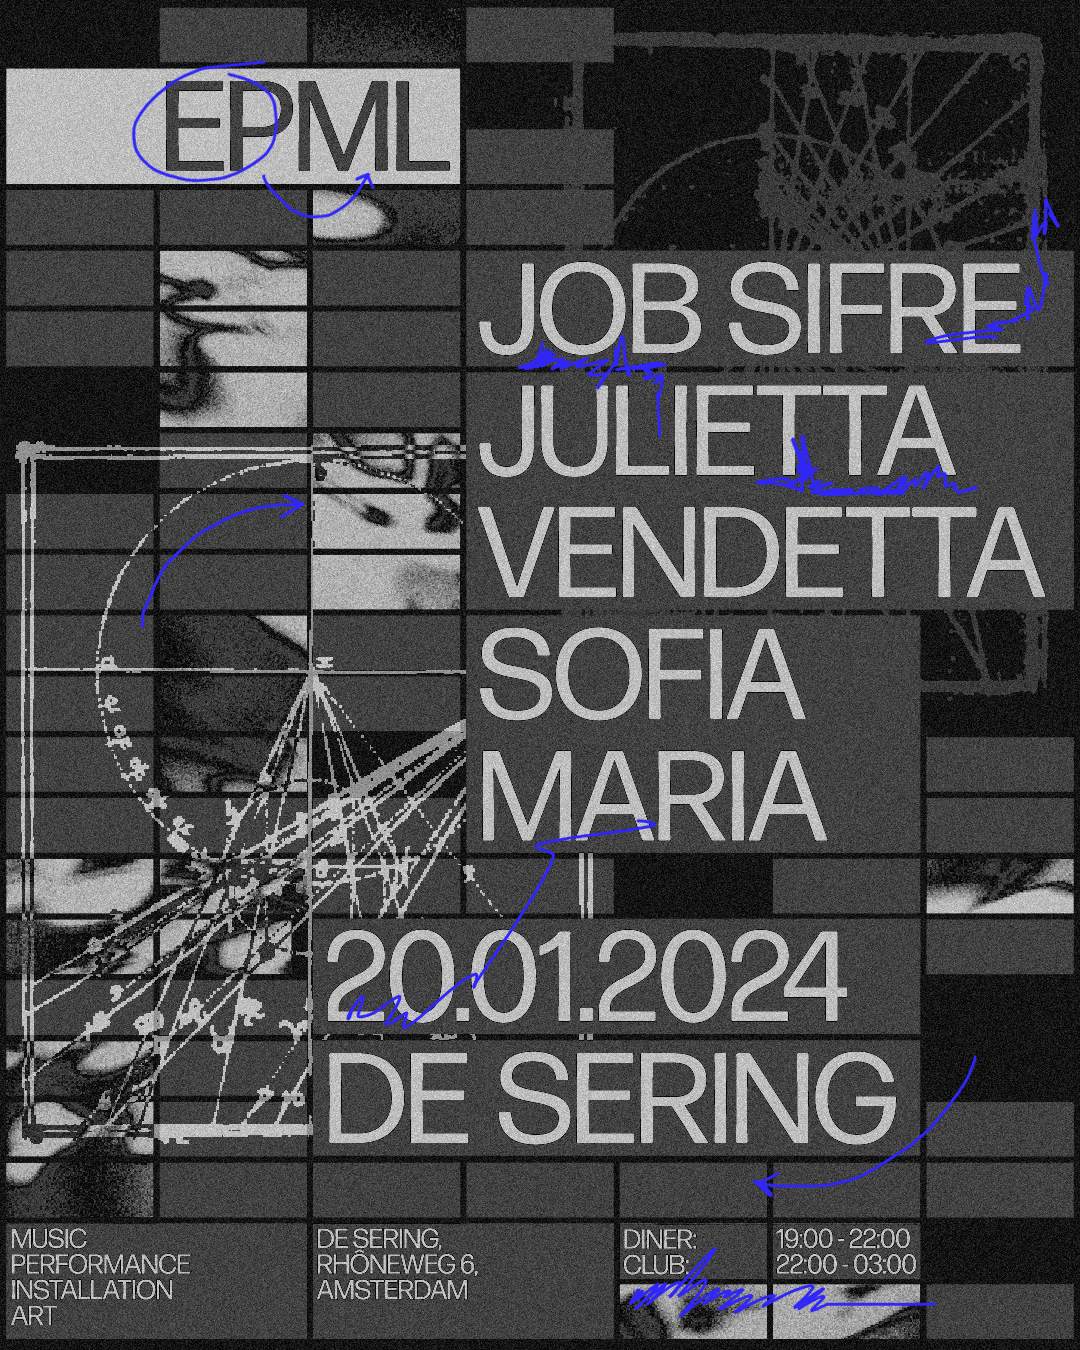 EPML_01 w/ Job Sifre / Julietta Vendetta / Sofia Maria - Página frontal